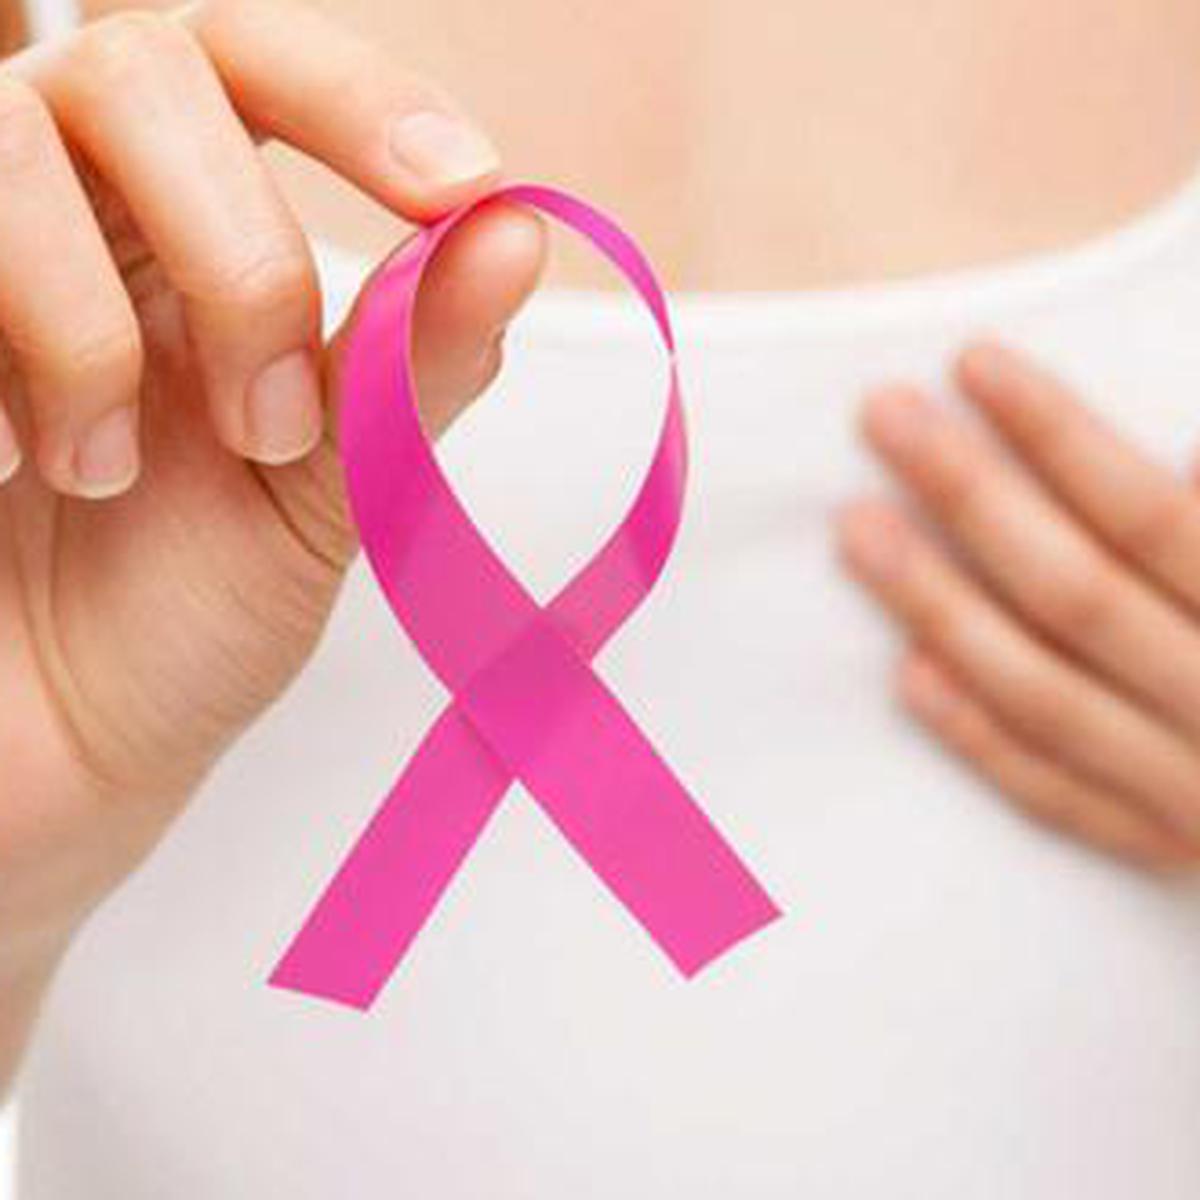 Acciones para prevenir el cáncer de mamas